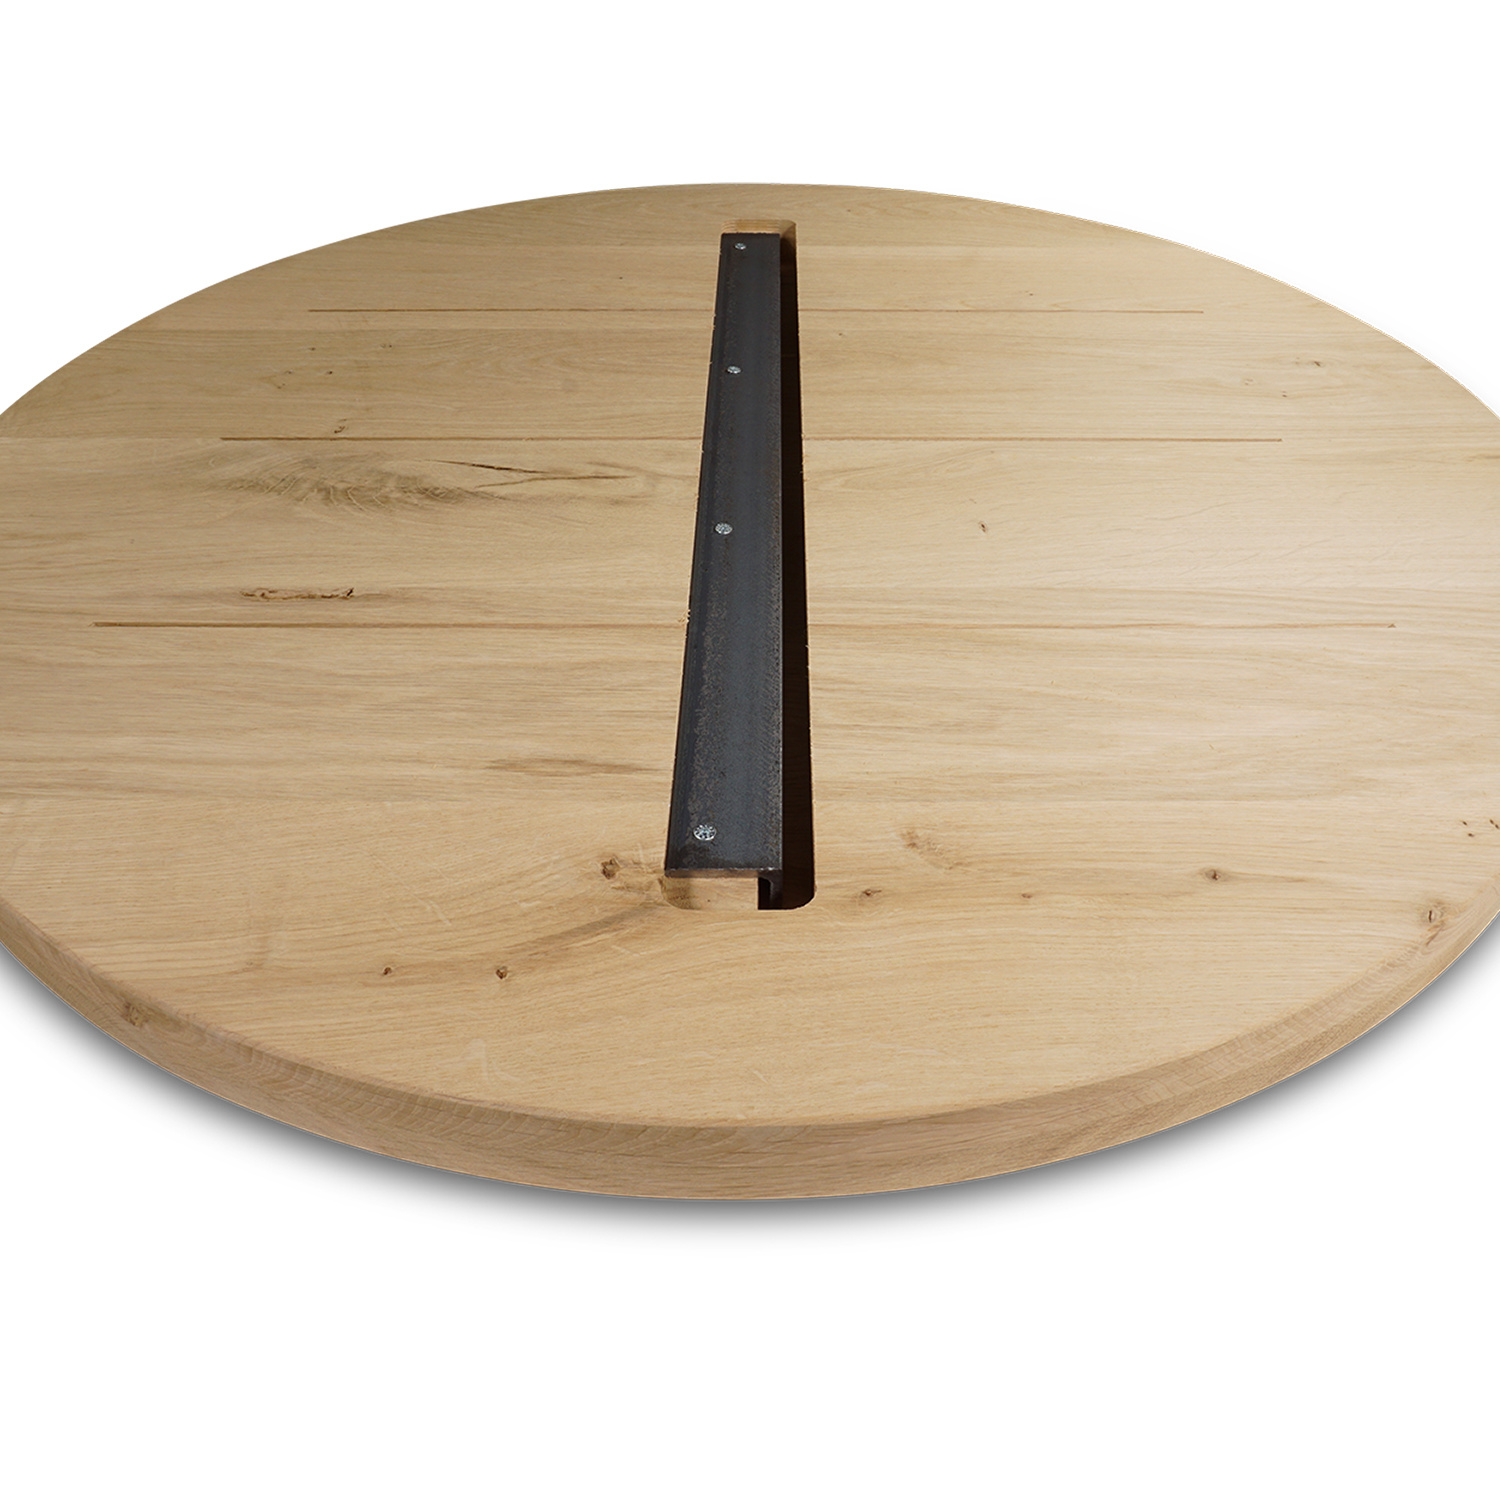  Rond eiken tafelblad op maat - 4 cm dik (2-laags) - rustiek Europees eikenhout - verlijmd kd 8-12% - diameter van 35 tot 130 cm